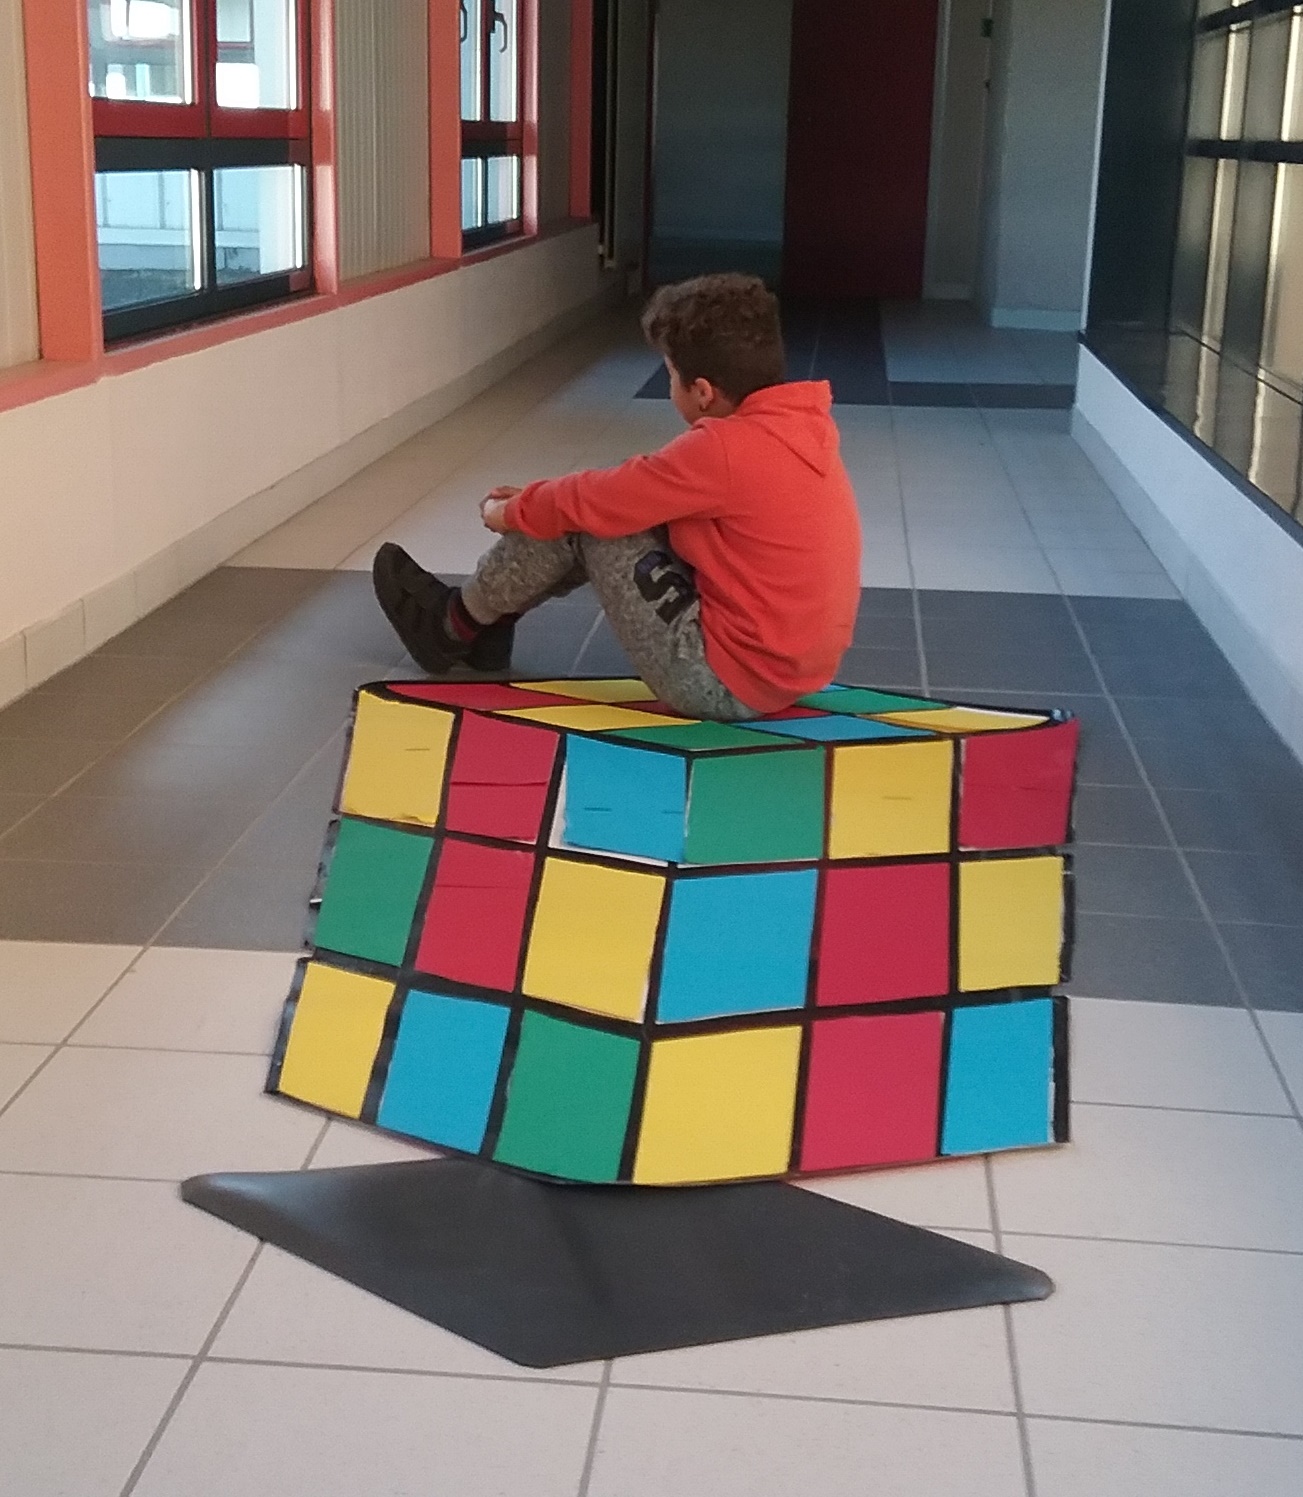 Un enfant assis dans le couloir sur un cube